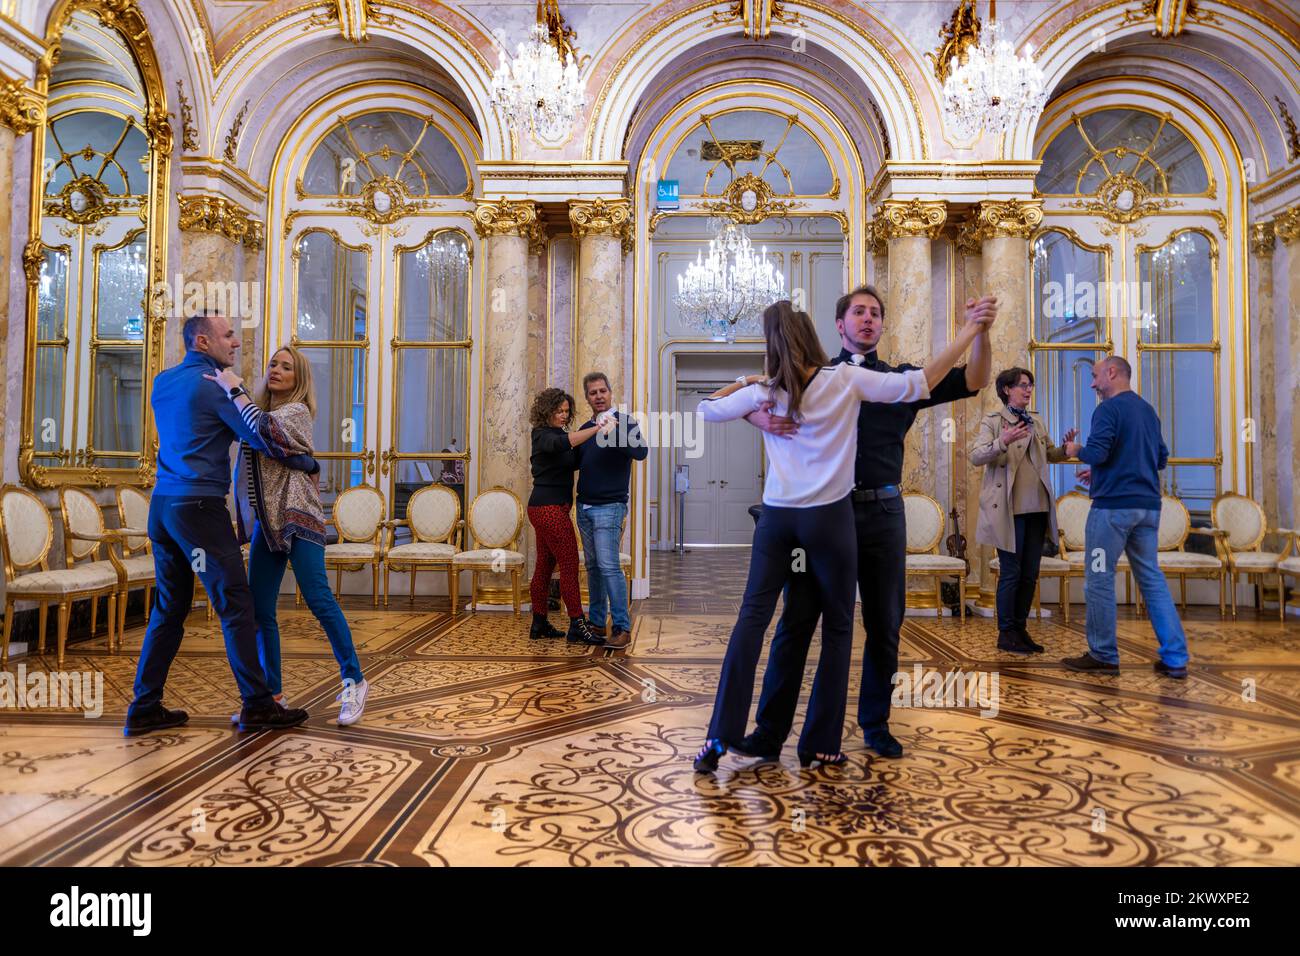 Waltz classe des cours de danse blitz à l'intérieur du Palais Coburg, également connu sous le nom de Palais Saxe-Coburg, il appartenait à la branche Kohary de la Maison de Saxe-Coburg Banque D'Images